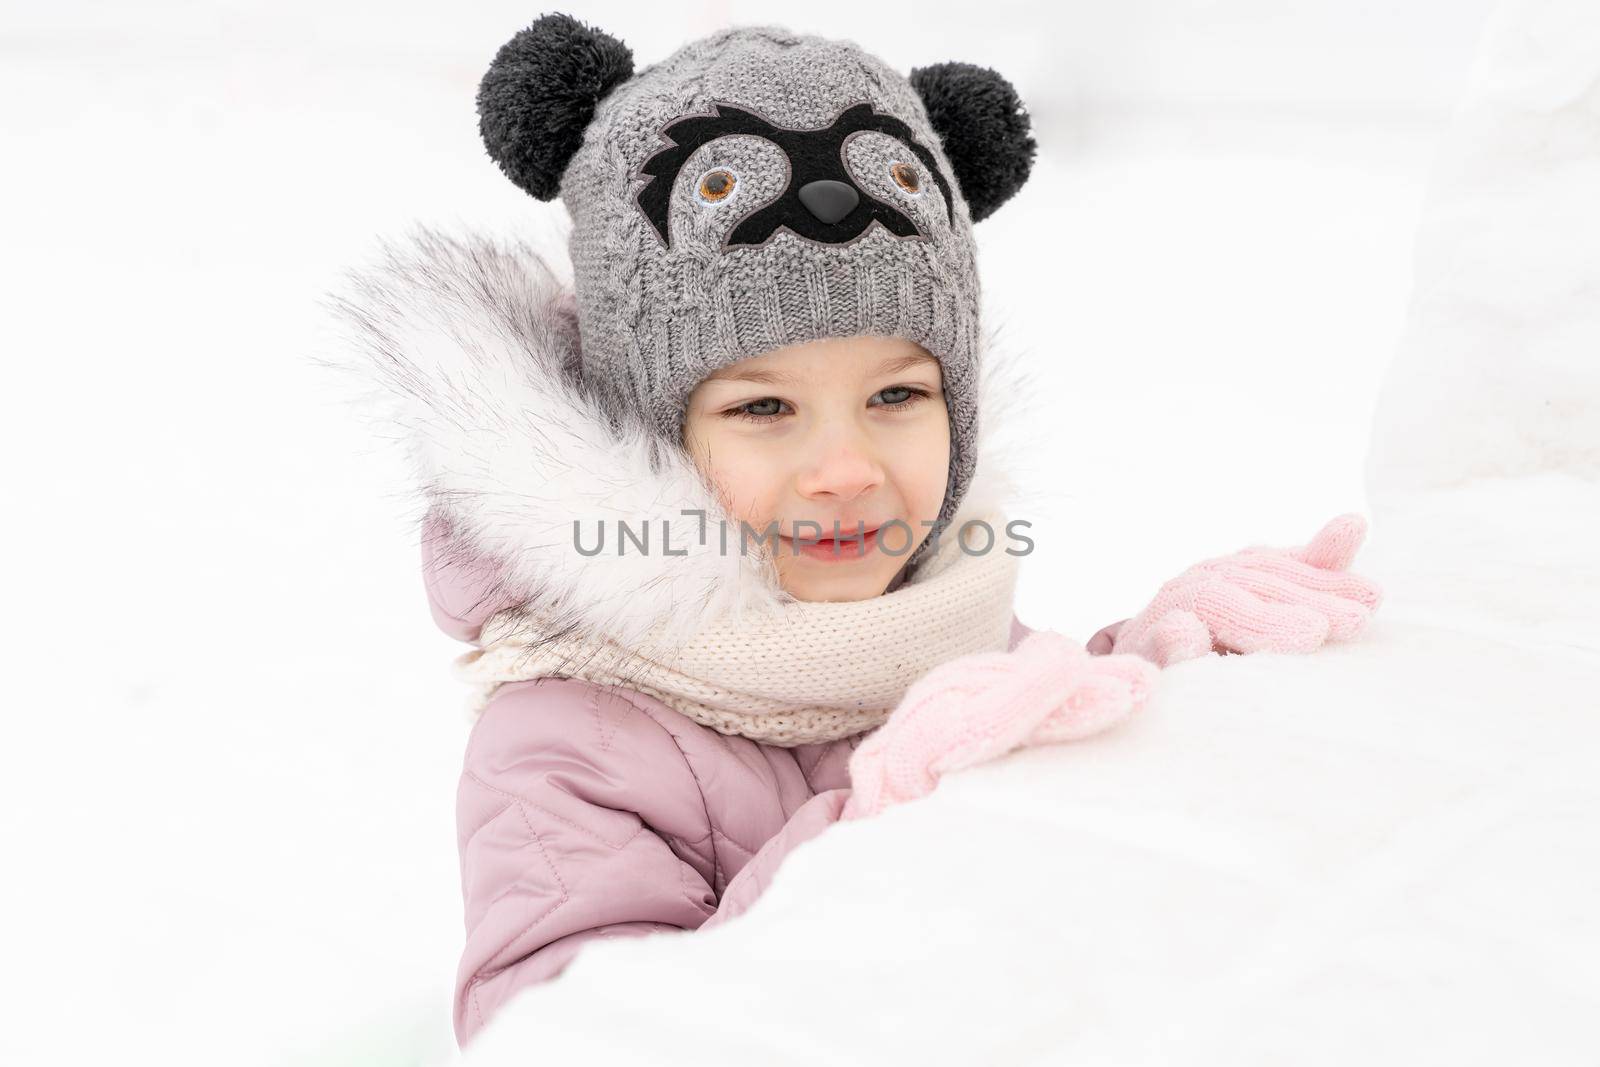 portrait of a happy child on a winter day by Lena_Ogurtsova